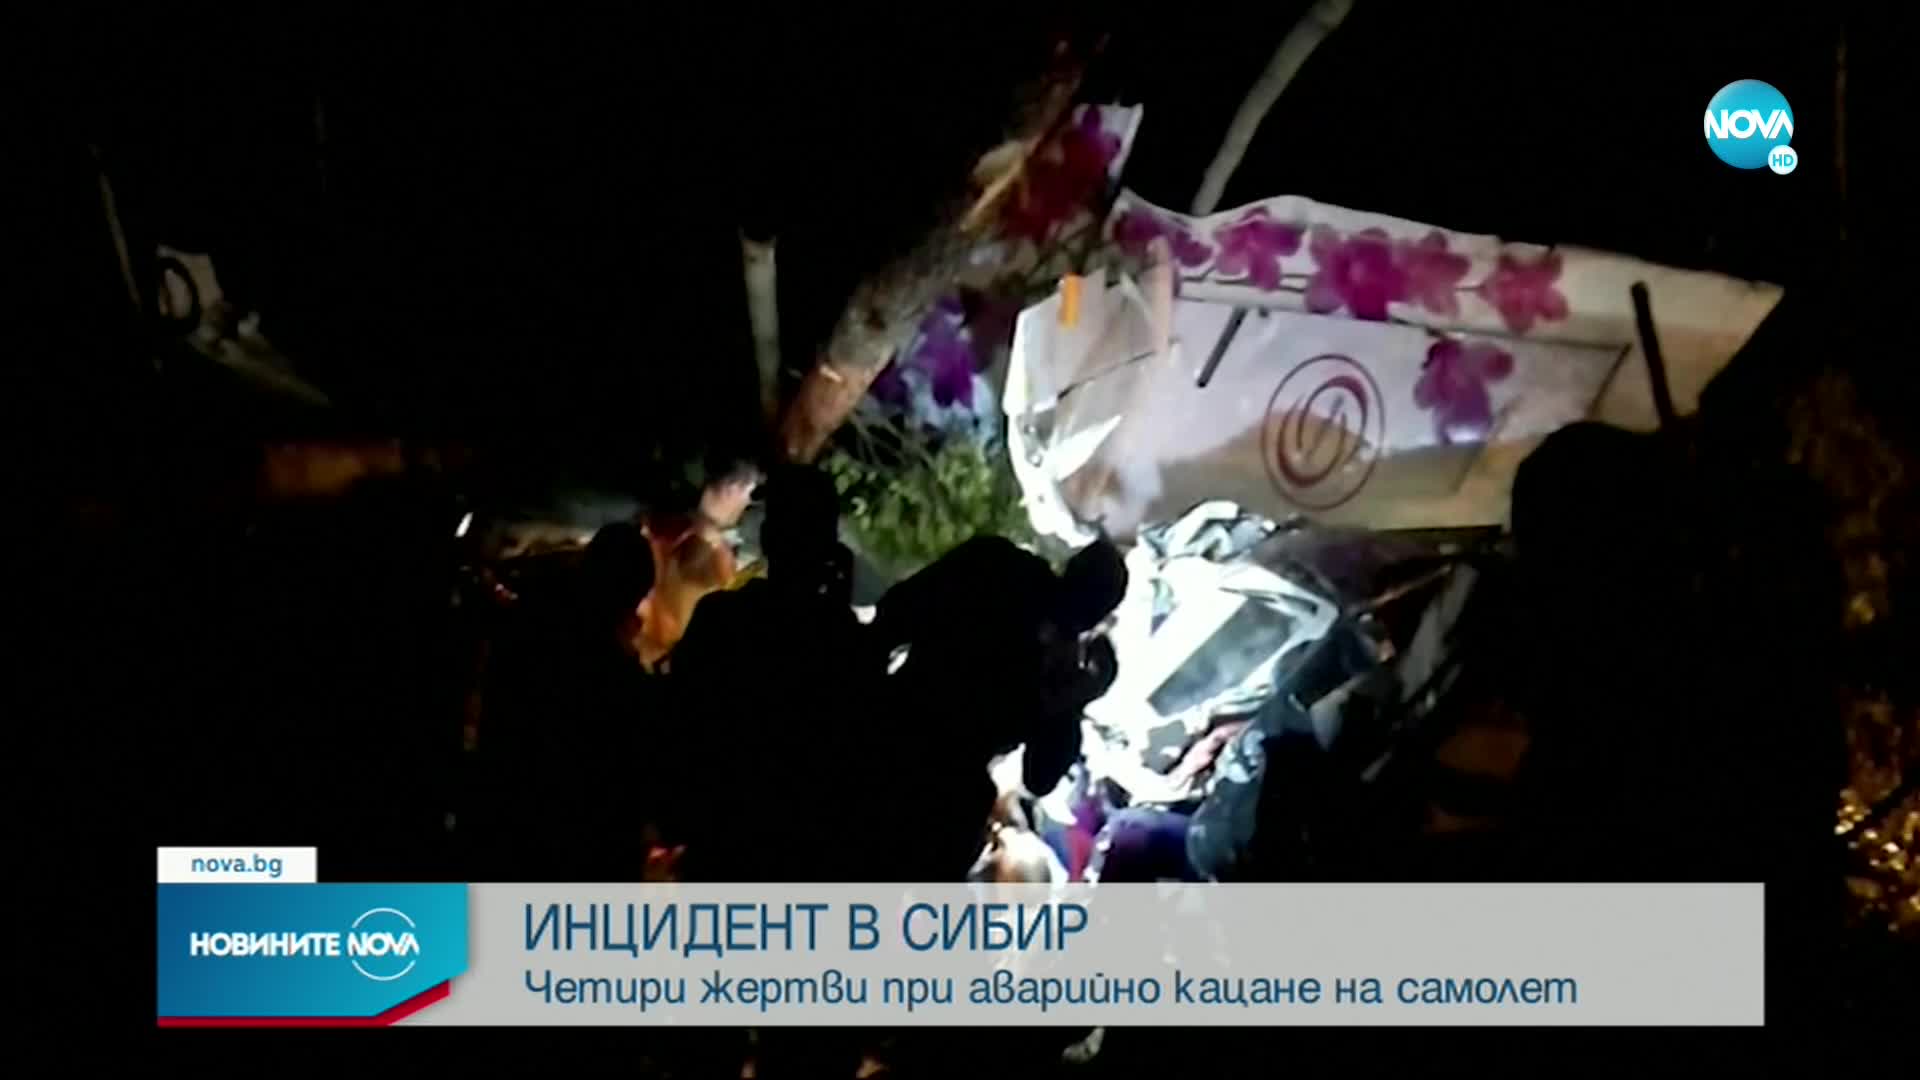 Четирима души загинаха при аварийно кацане на самолет в Сибир